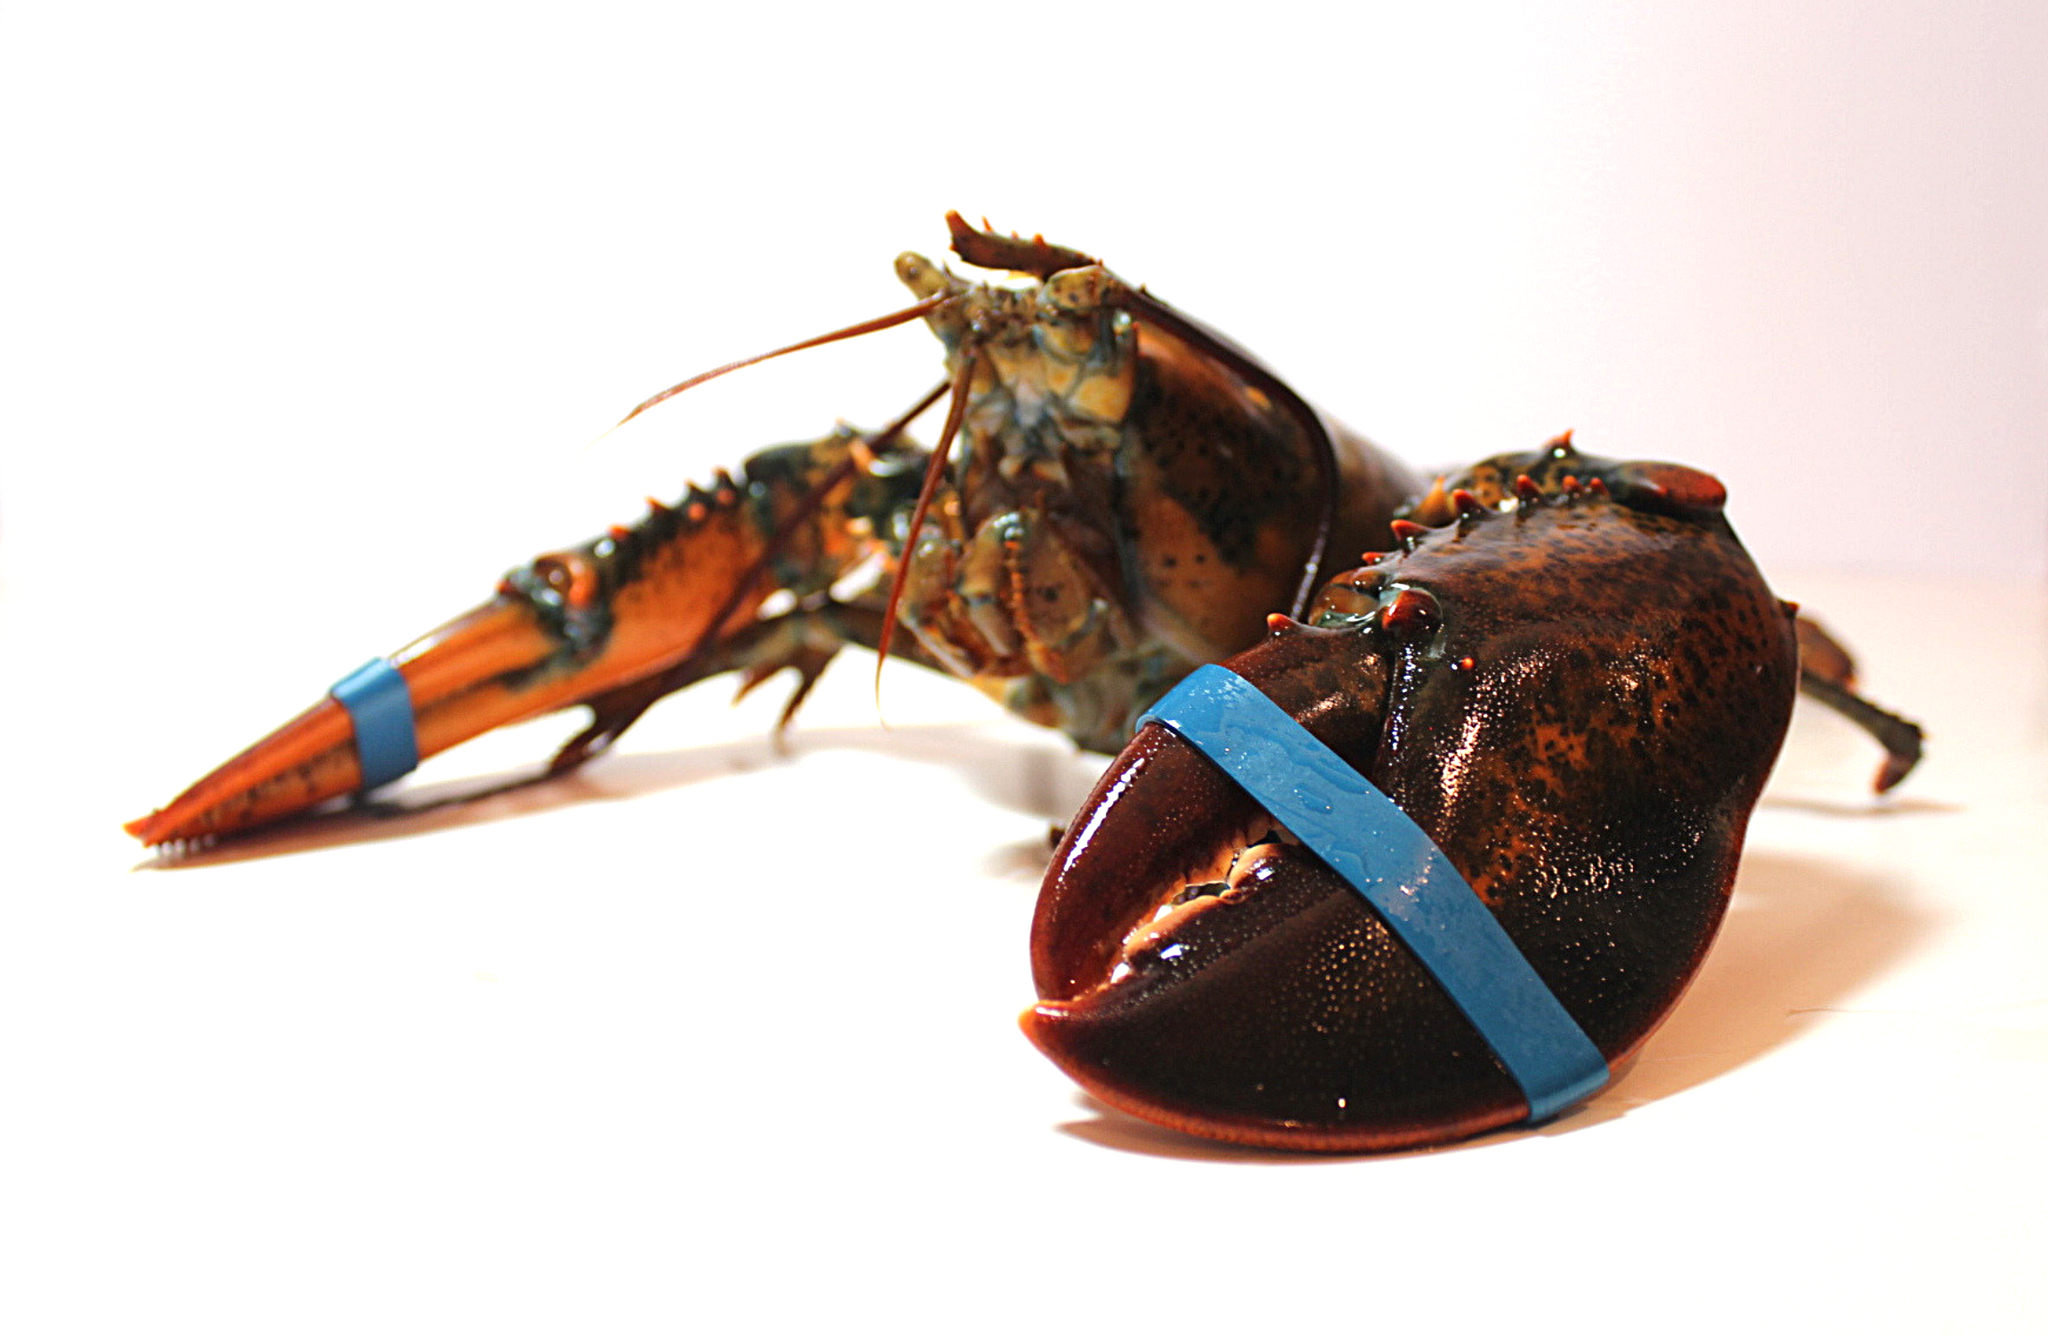 Live Lobster Image 3